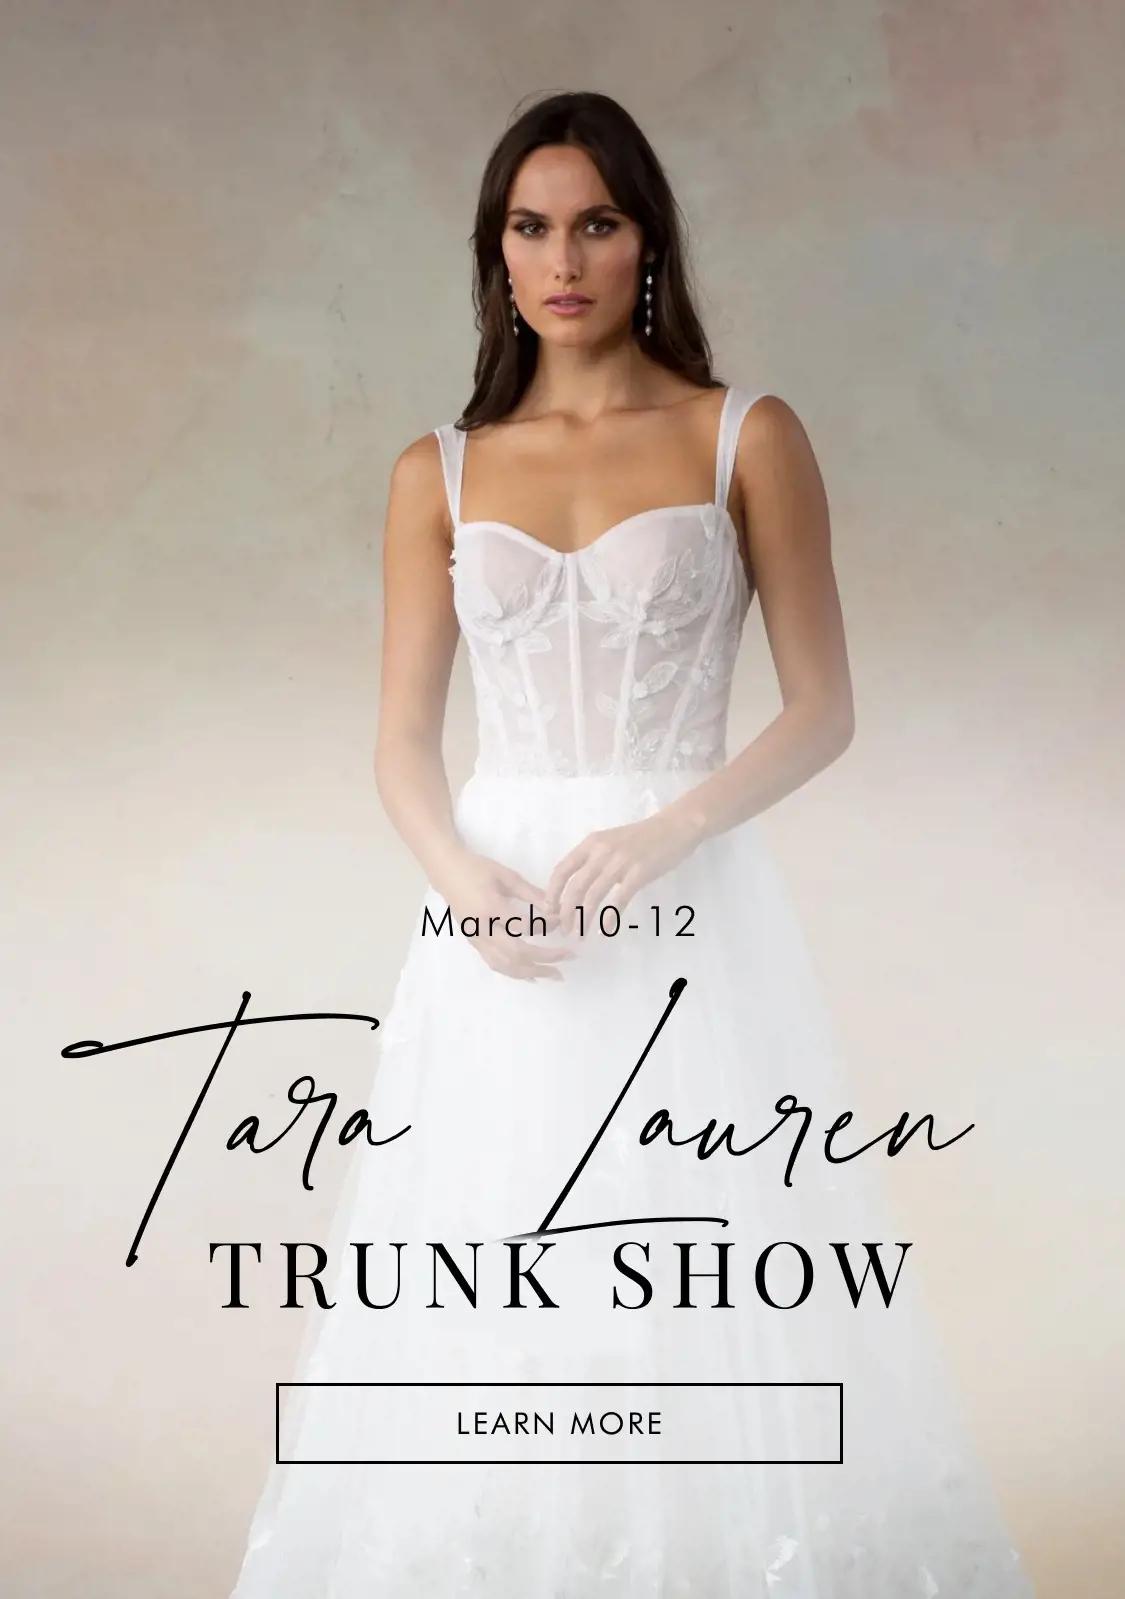 "Tara Lauren Trunk Show" banner for mobile